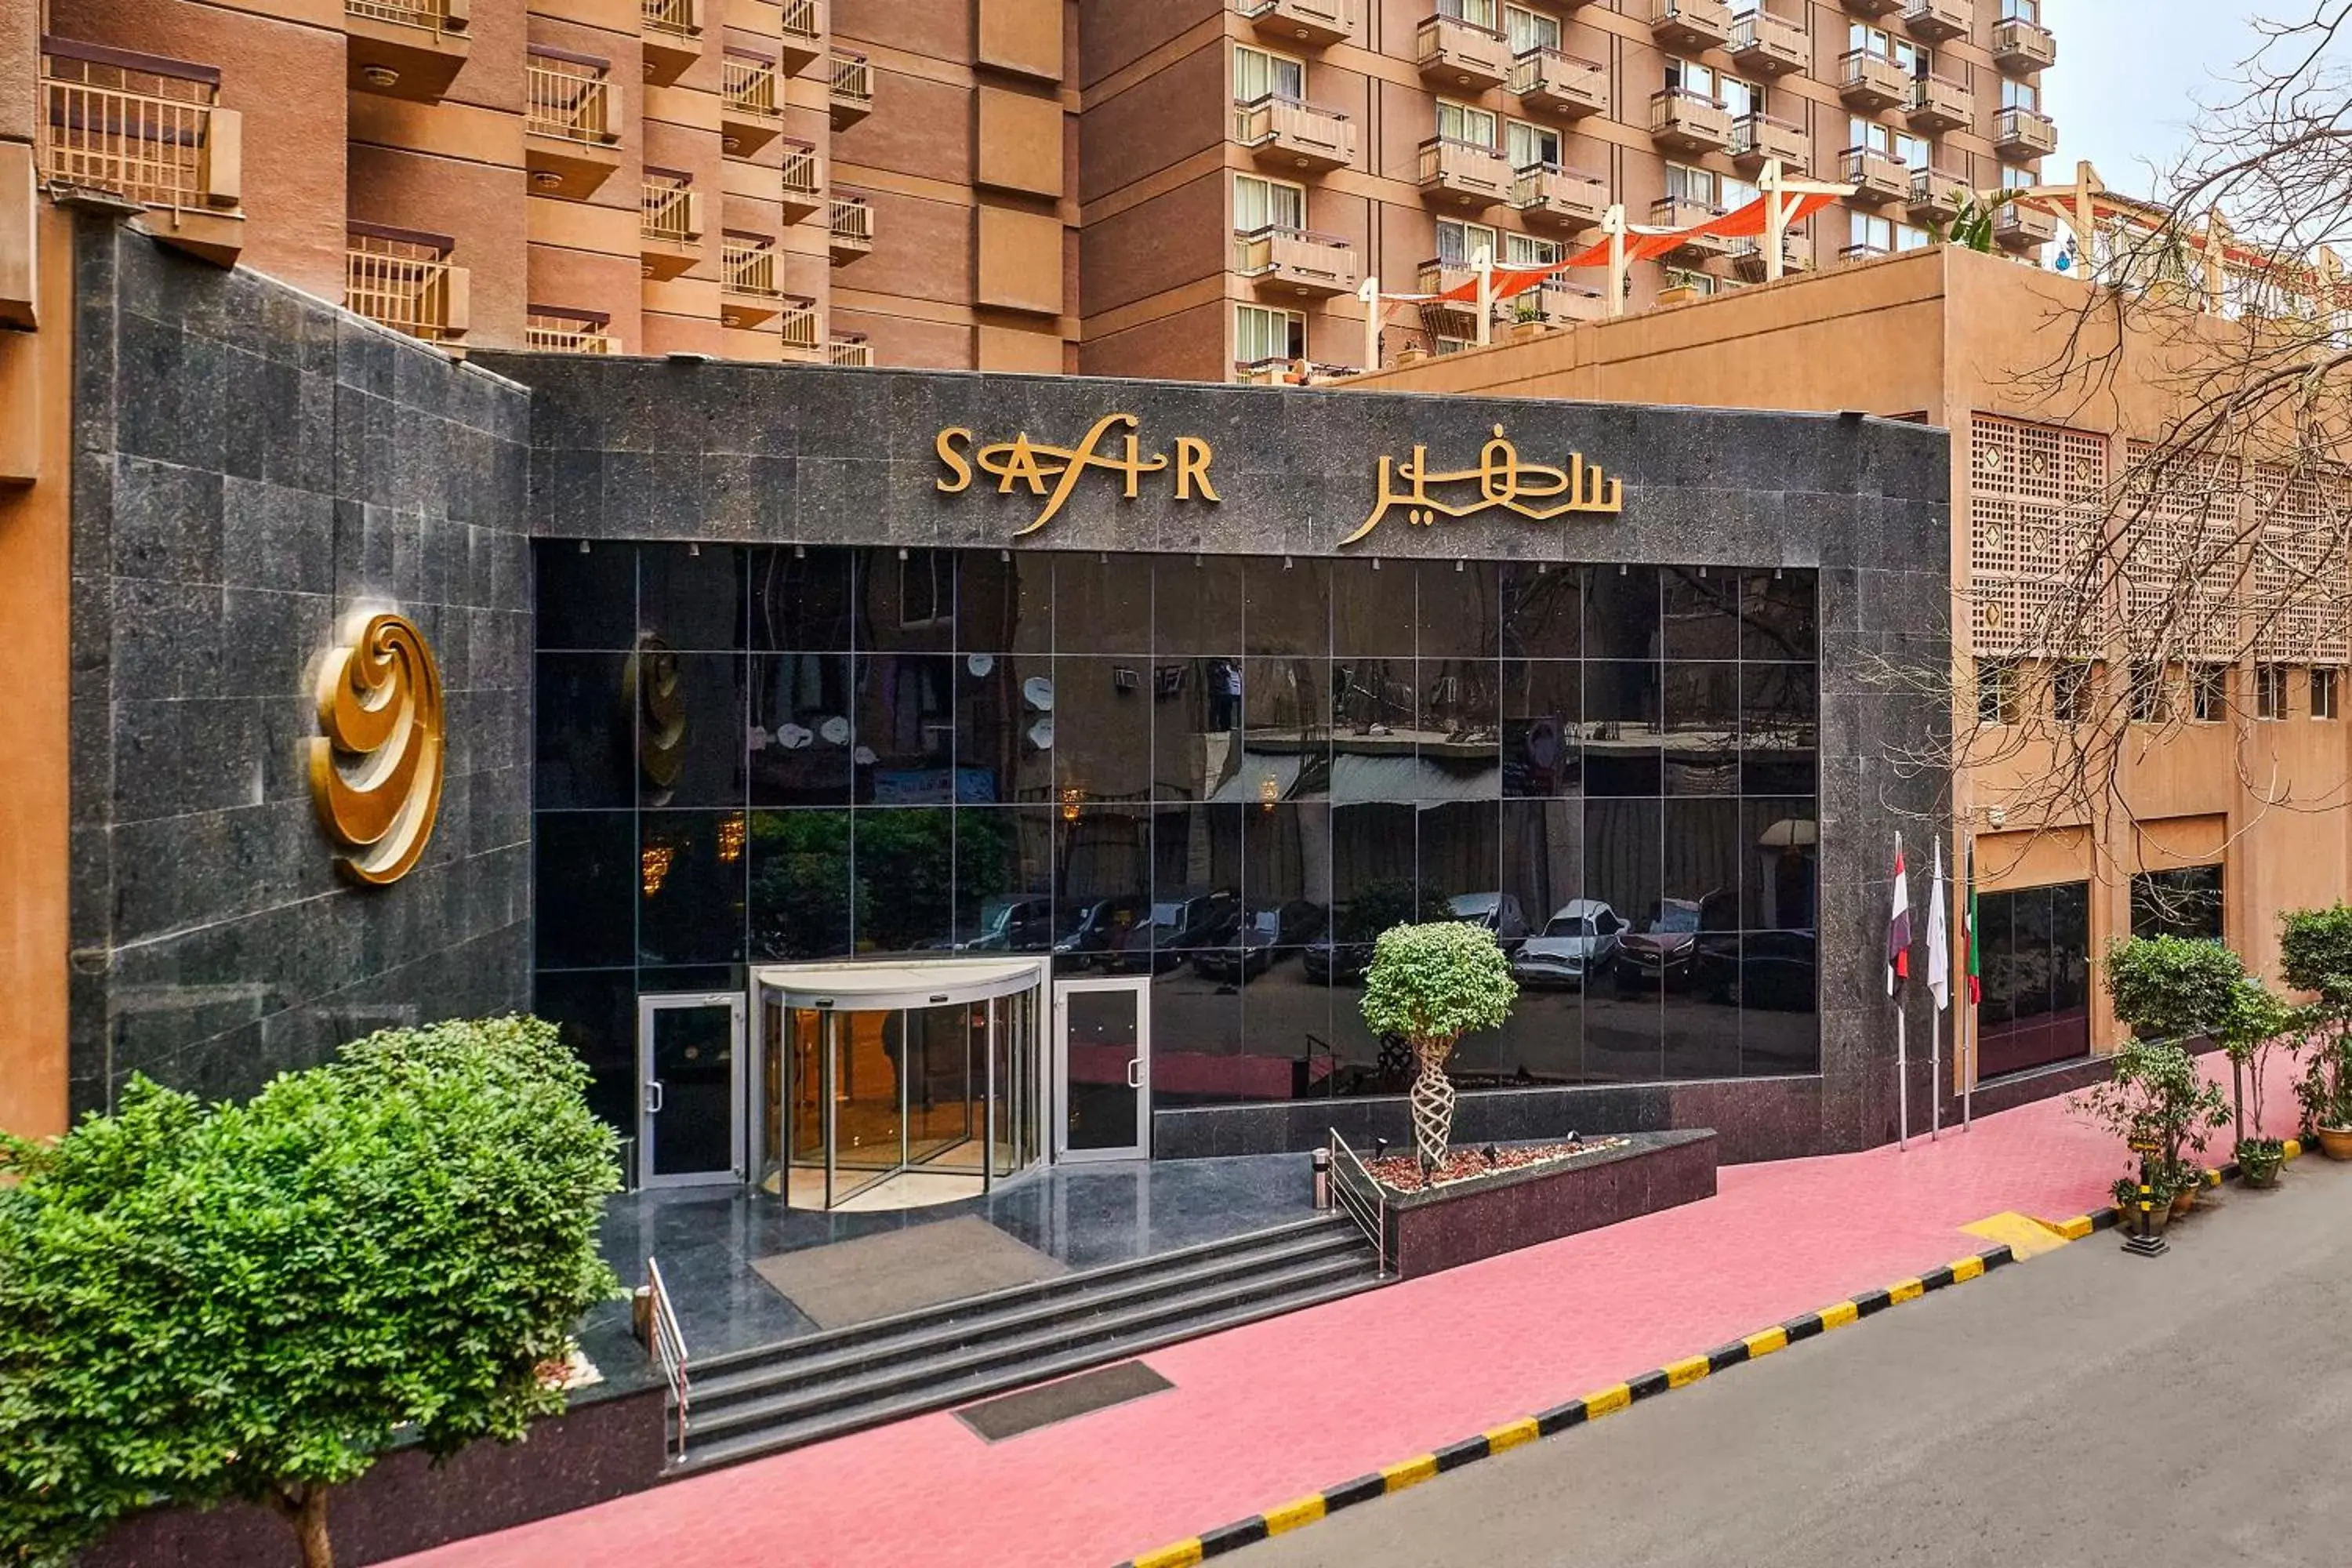 Facade/entrance in Safir Hotel Cairo